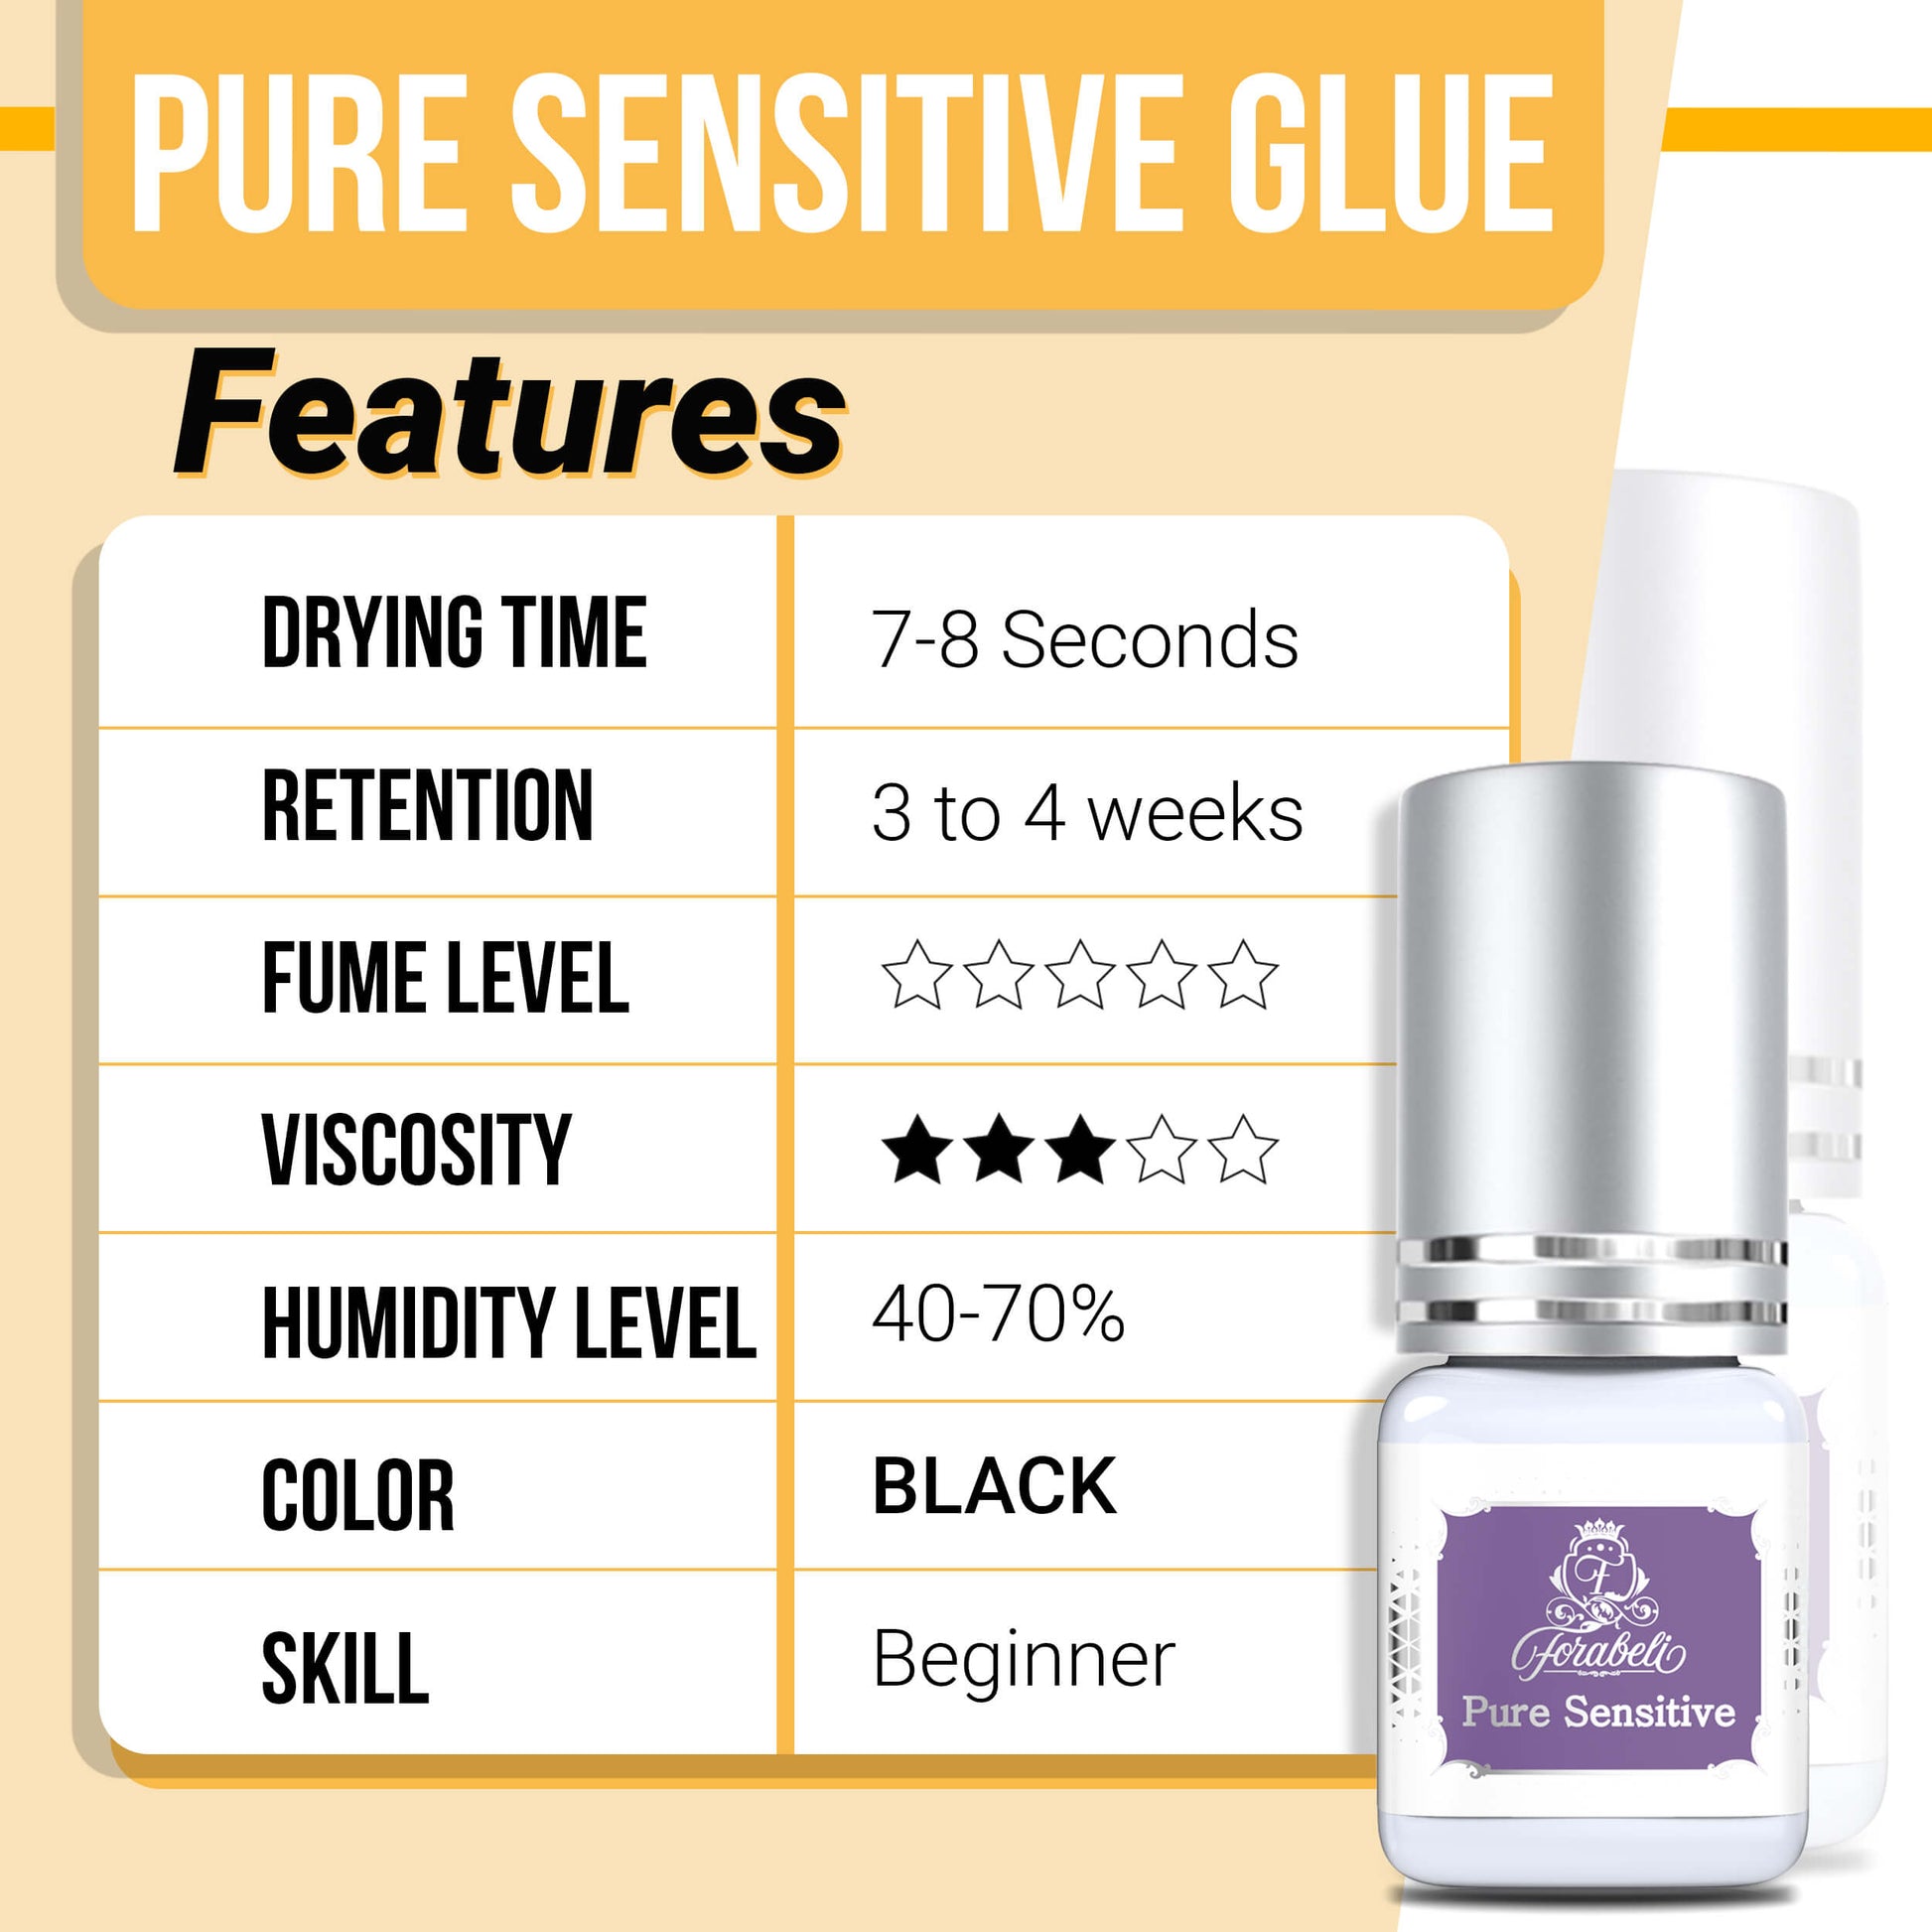 pure sensitive eyelash extension glue features